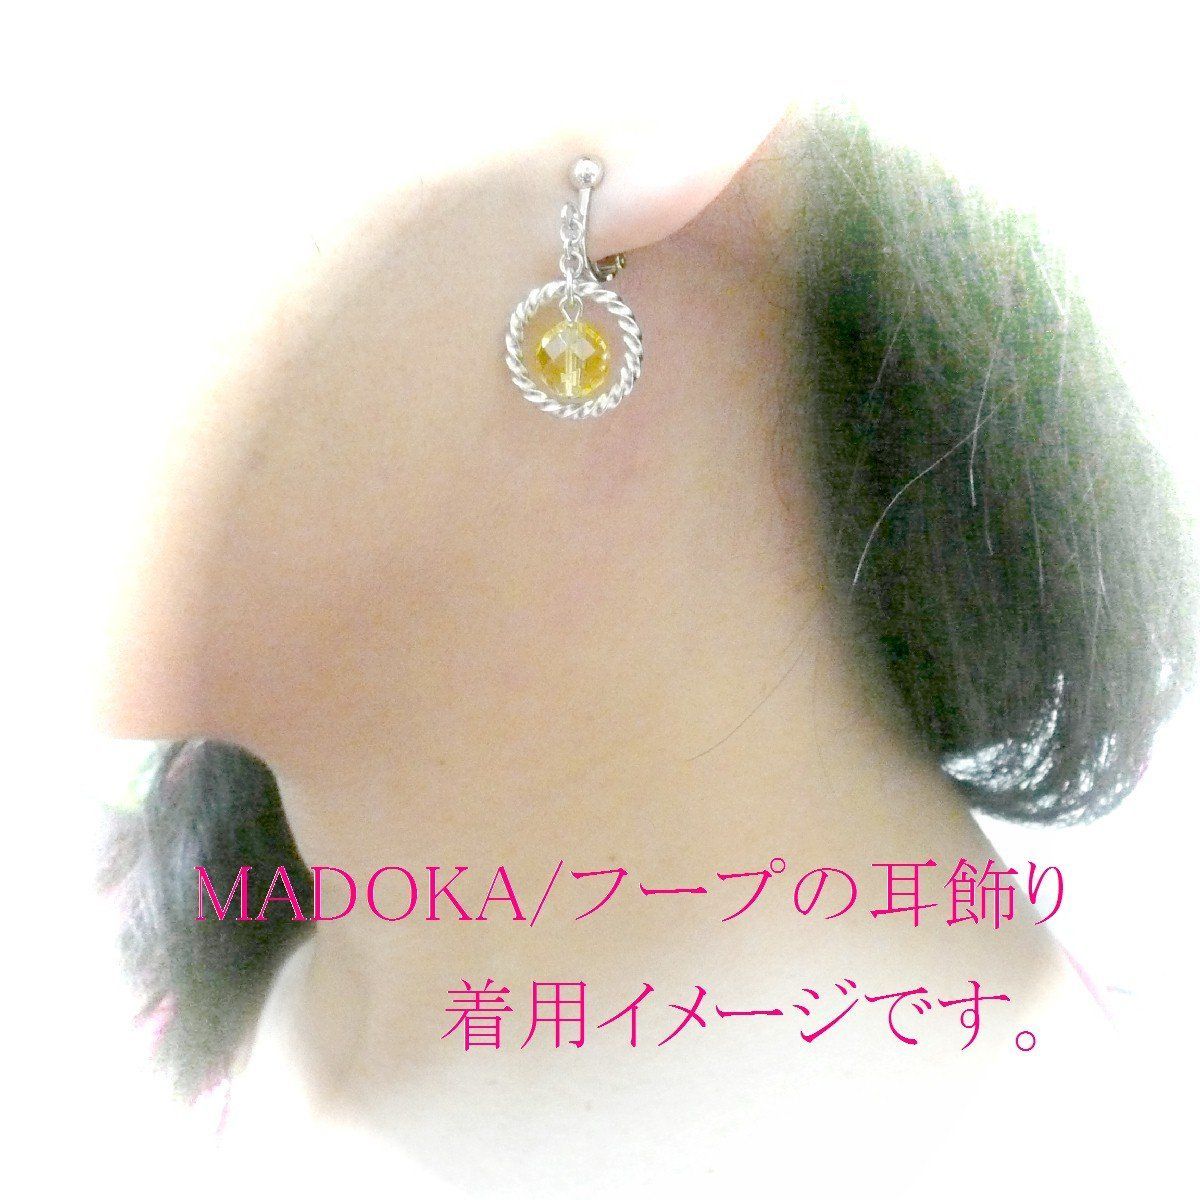 【数量限定】ターコイズ 】 (8mm 環/MADOKA 丸珠) 【 ピアス